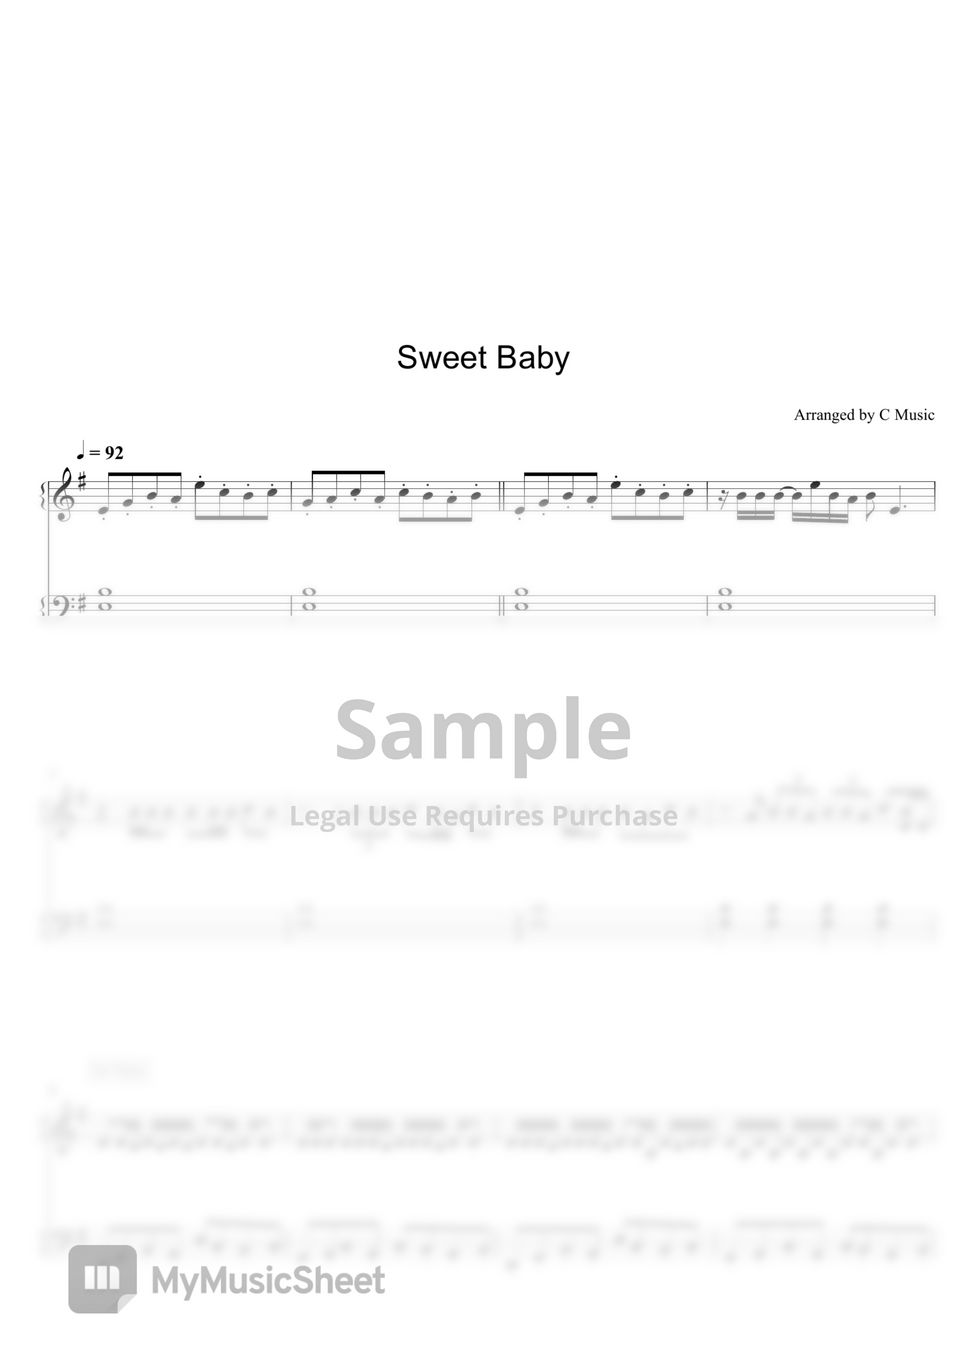 頑童MJ116 - Sweet Baby by C Music